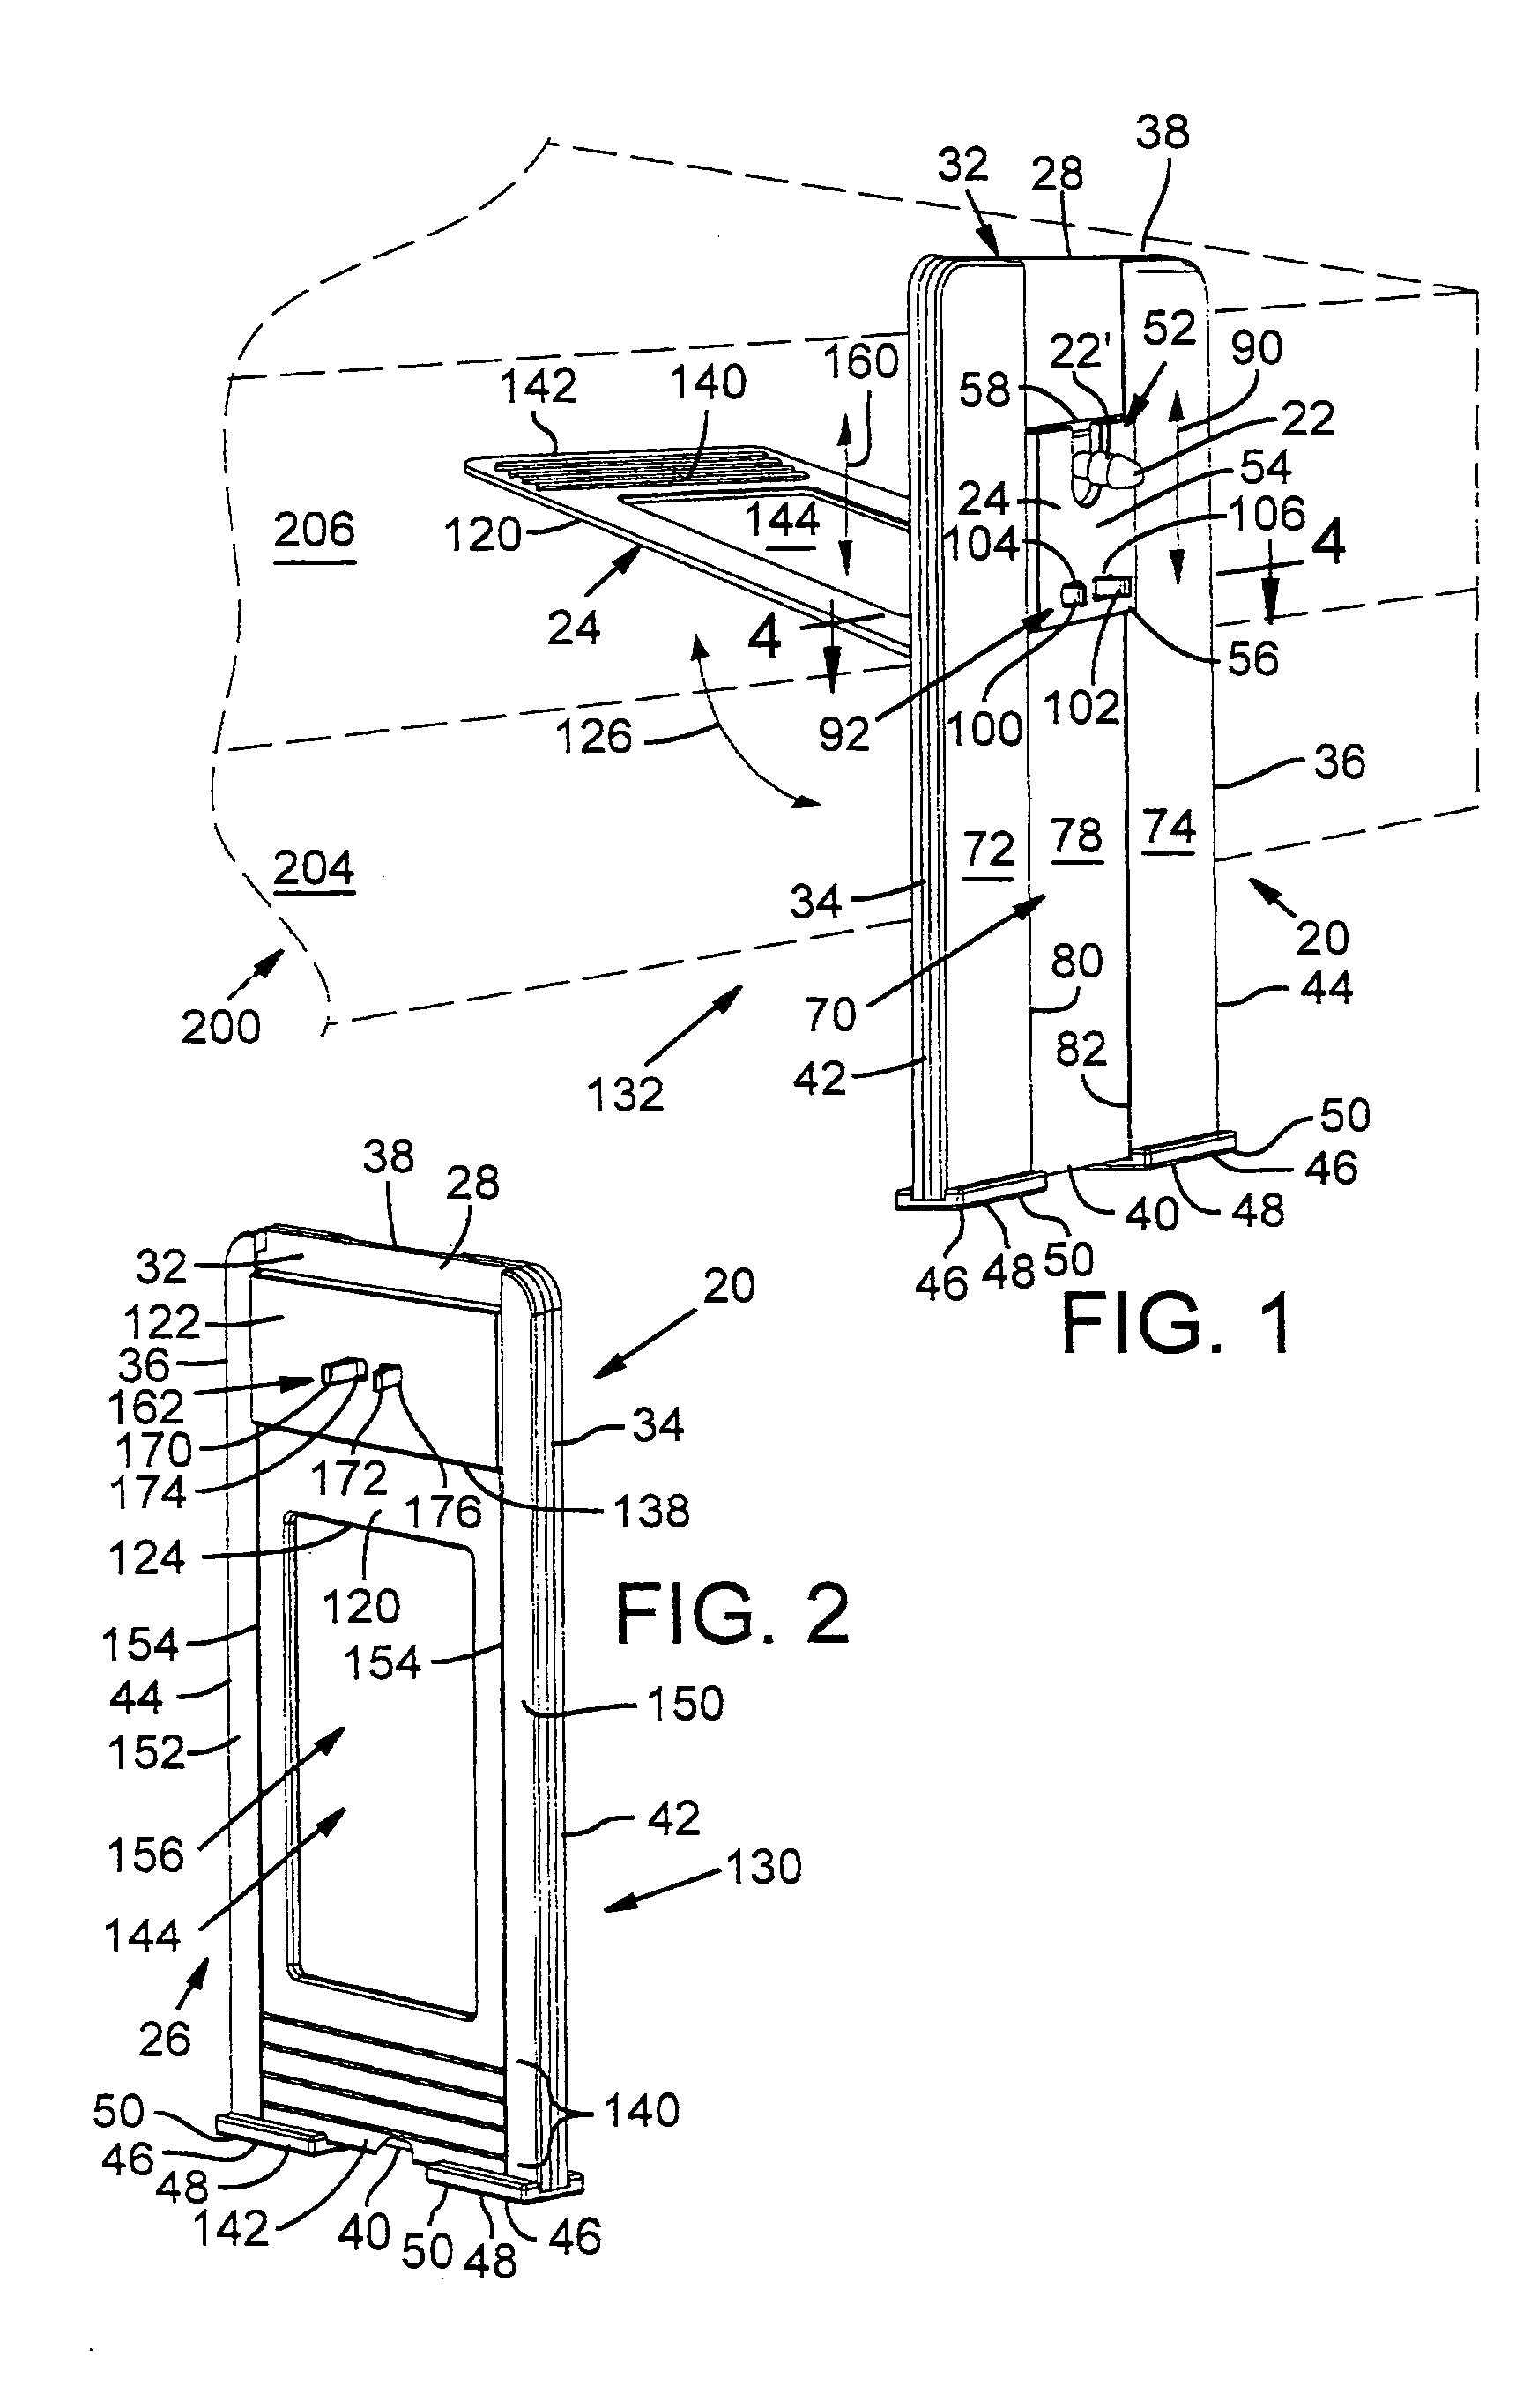 Phallic device mount and method of use